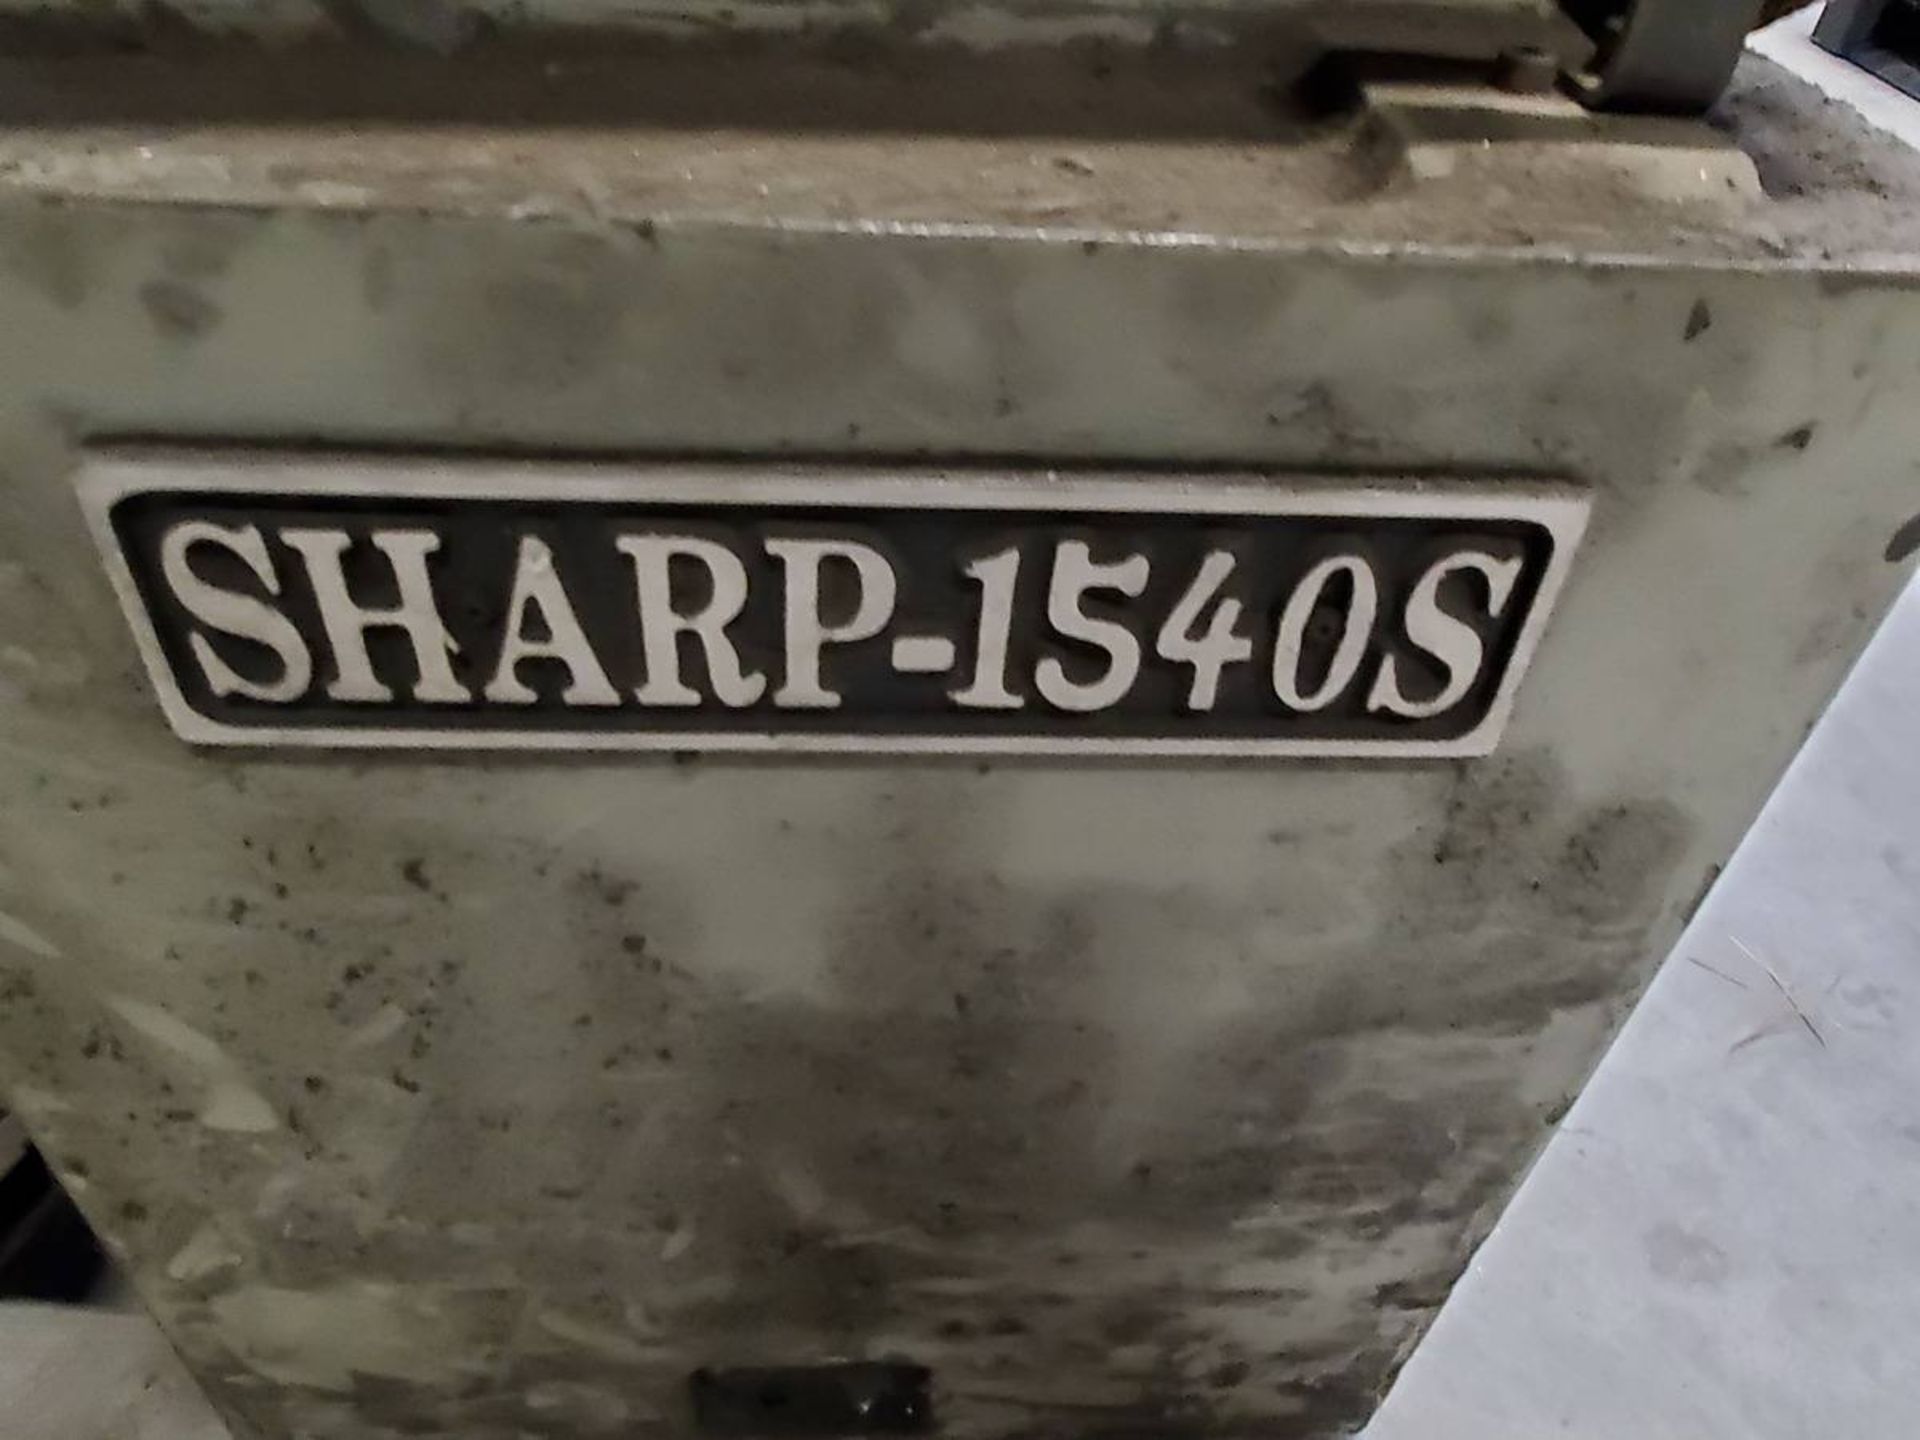 Sharp 1540S Lathe - Image 7 of 9